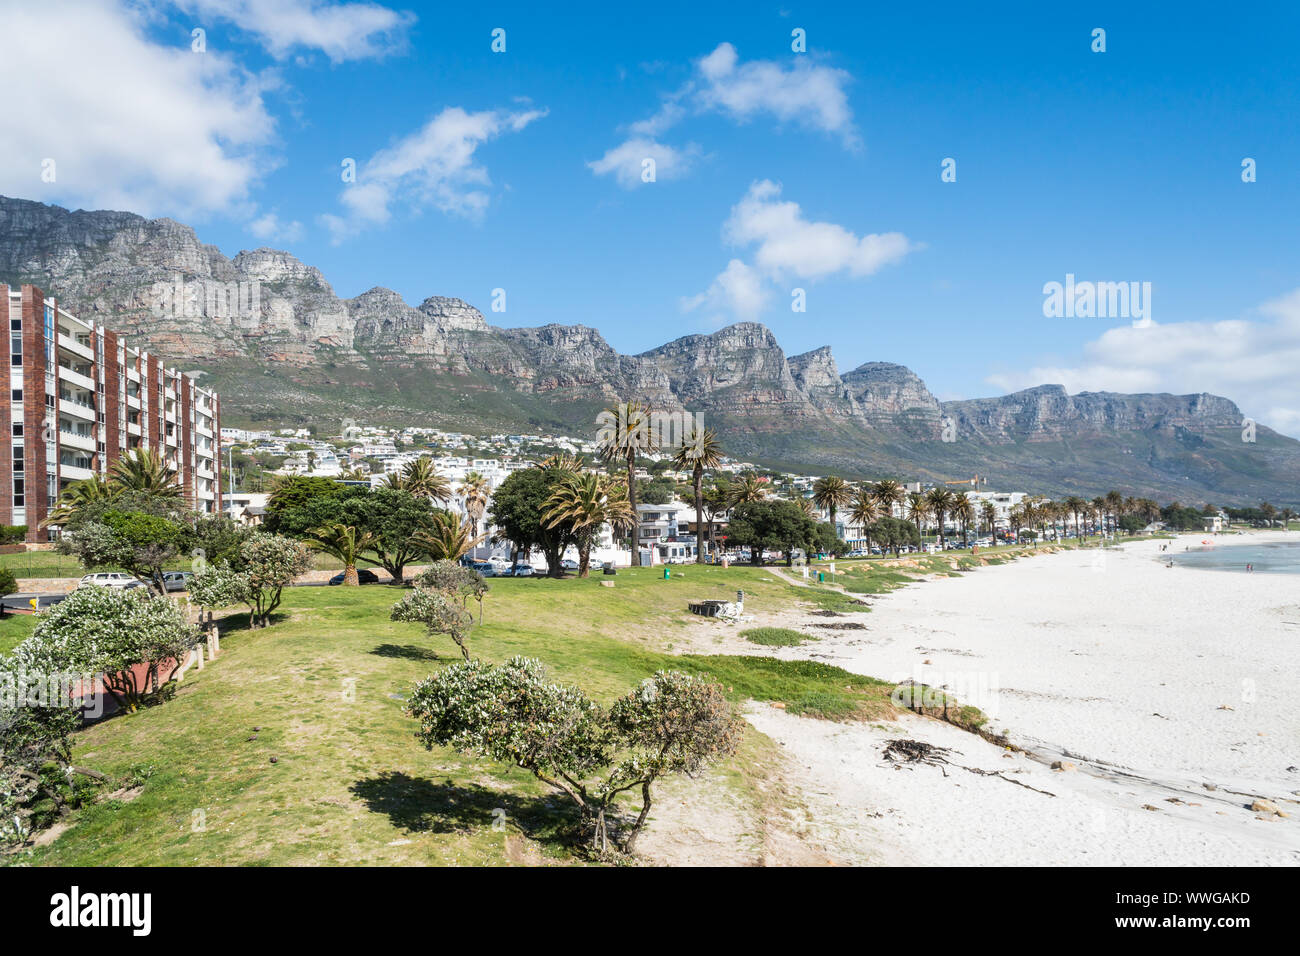 Camps Bay weißen sandigen Strand mit Blauer Flagge in Kapstadt, Südafrika mit Blick auf die exklusiven Vorort mit zwölf Apostel Berge im Hintergrund Stockfoto